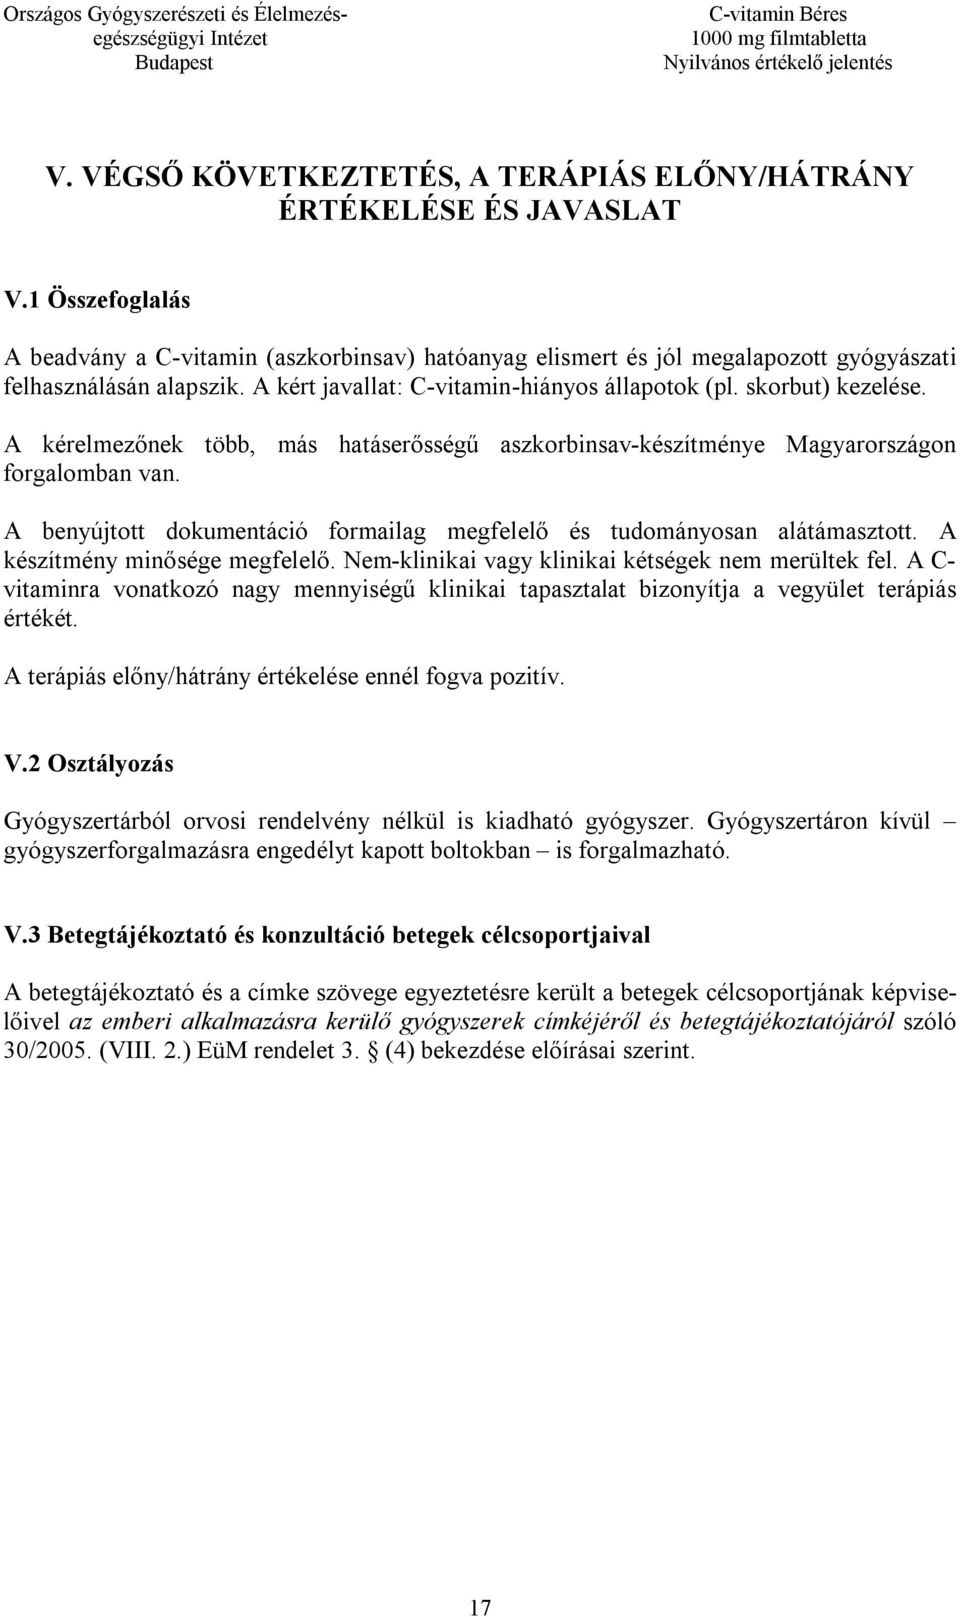 A kérelmezőnek több, más hatáserősségű aszkorbinsav-készítménye Magyarországon forgalomban van. A benyújtott dokumentáció formailag megfelelő és tudományosan alátámasztott.